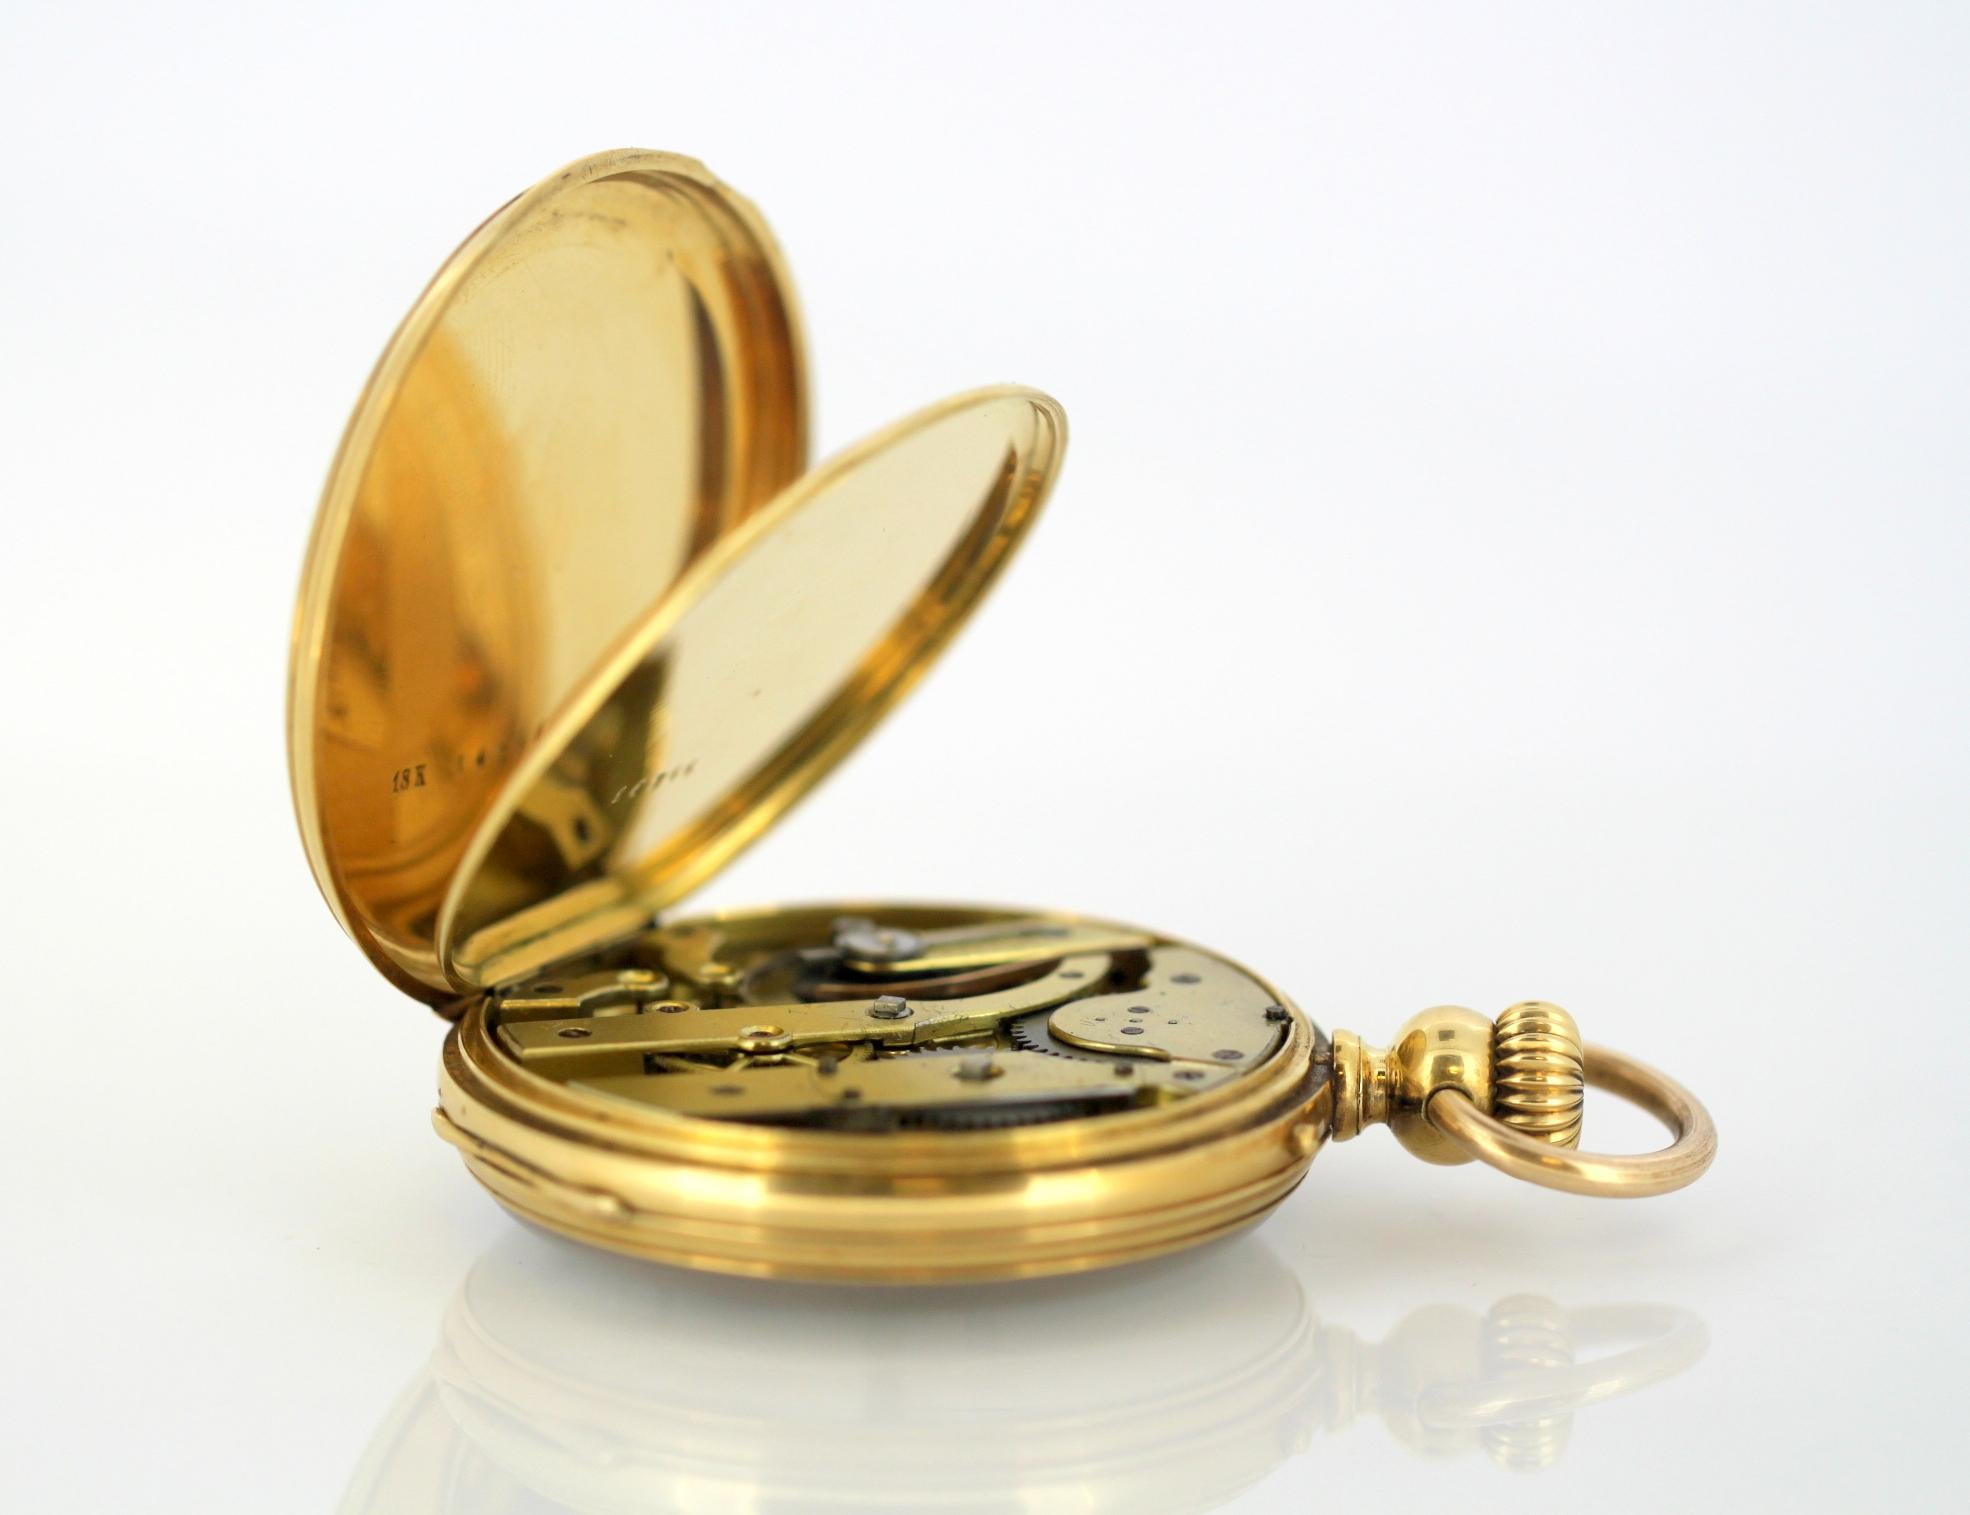 Antique Swiss 18 Karat Yellow Gold Pocket Watch by Amore Spiral Breguet, 1920s 9